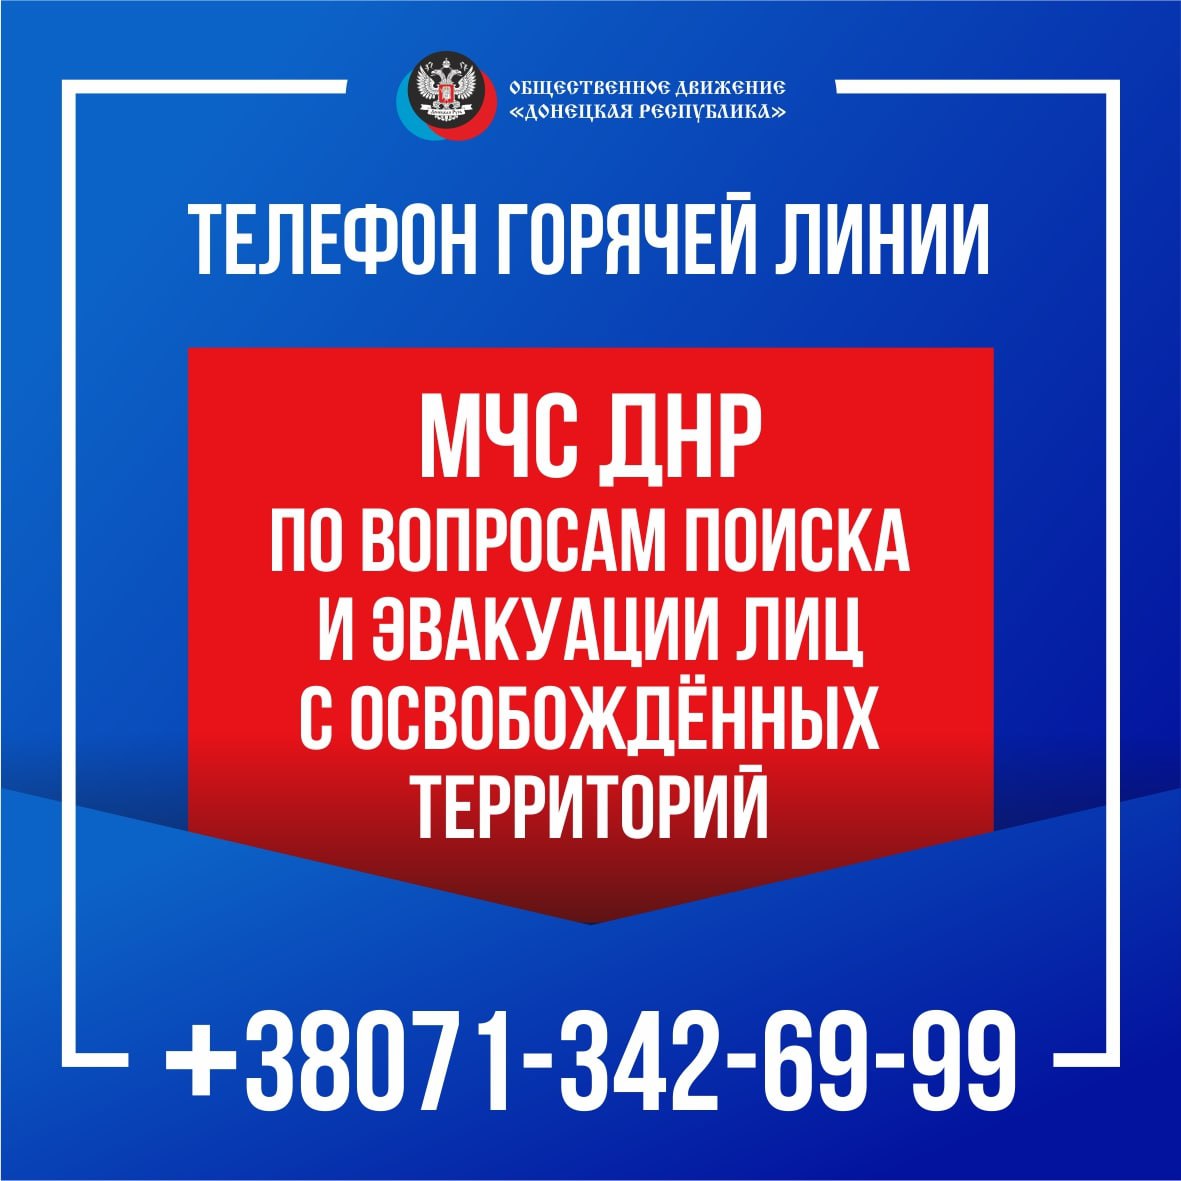 В МЧС ДНР продолжает работу телефон «горячей линии» для оперативного информационного оказания помощи населению